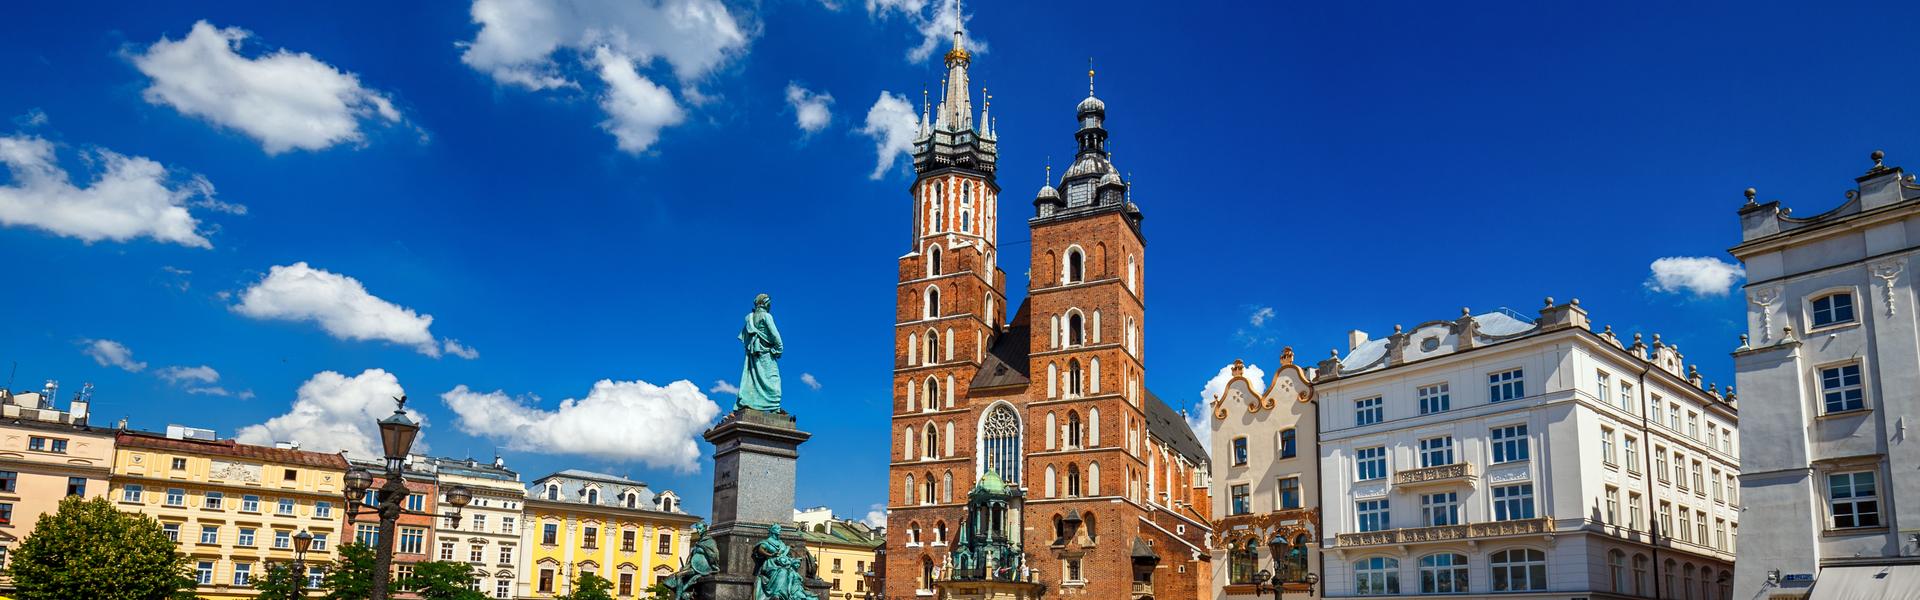 Immagine: Kościół Mariacki – jeden z najwspanialszych zabytków Krakowa i przykład sztuki gotyckiej. 800 lat historii